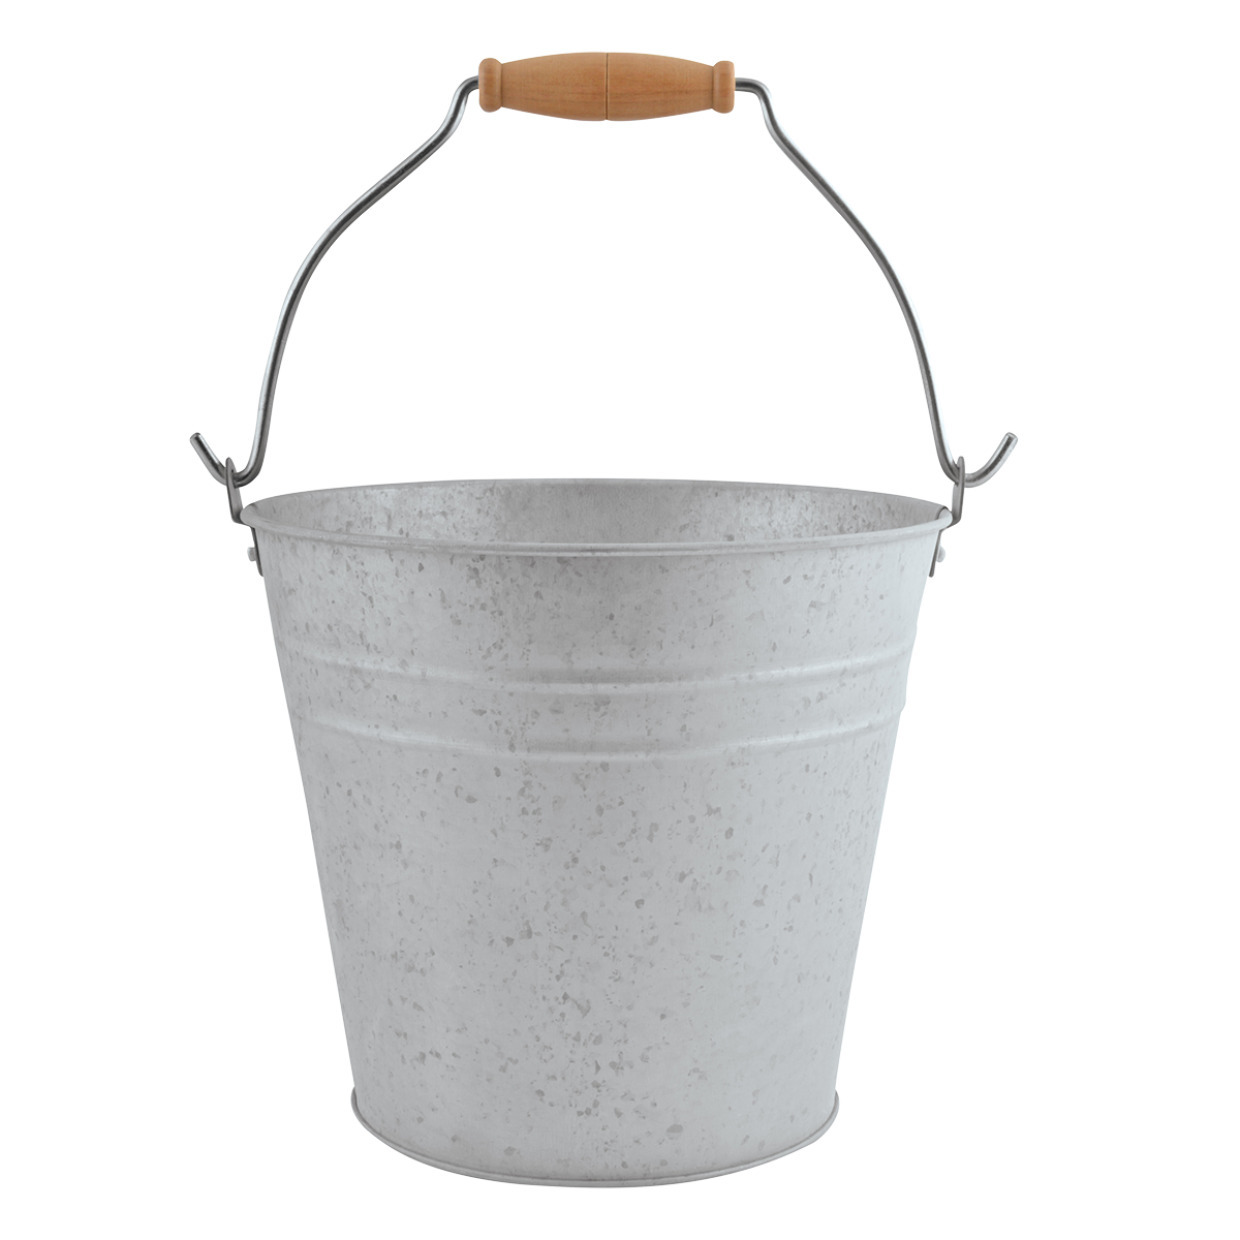 Zinken emmer-bloempot-plantenpot met handvat 5 liter